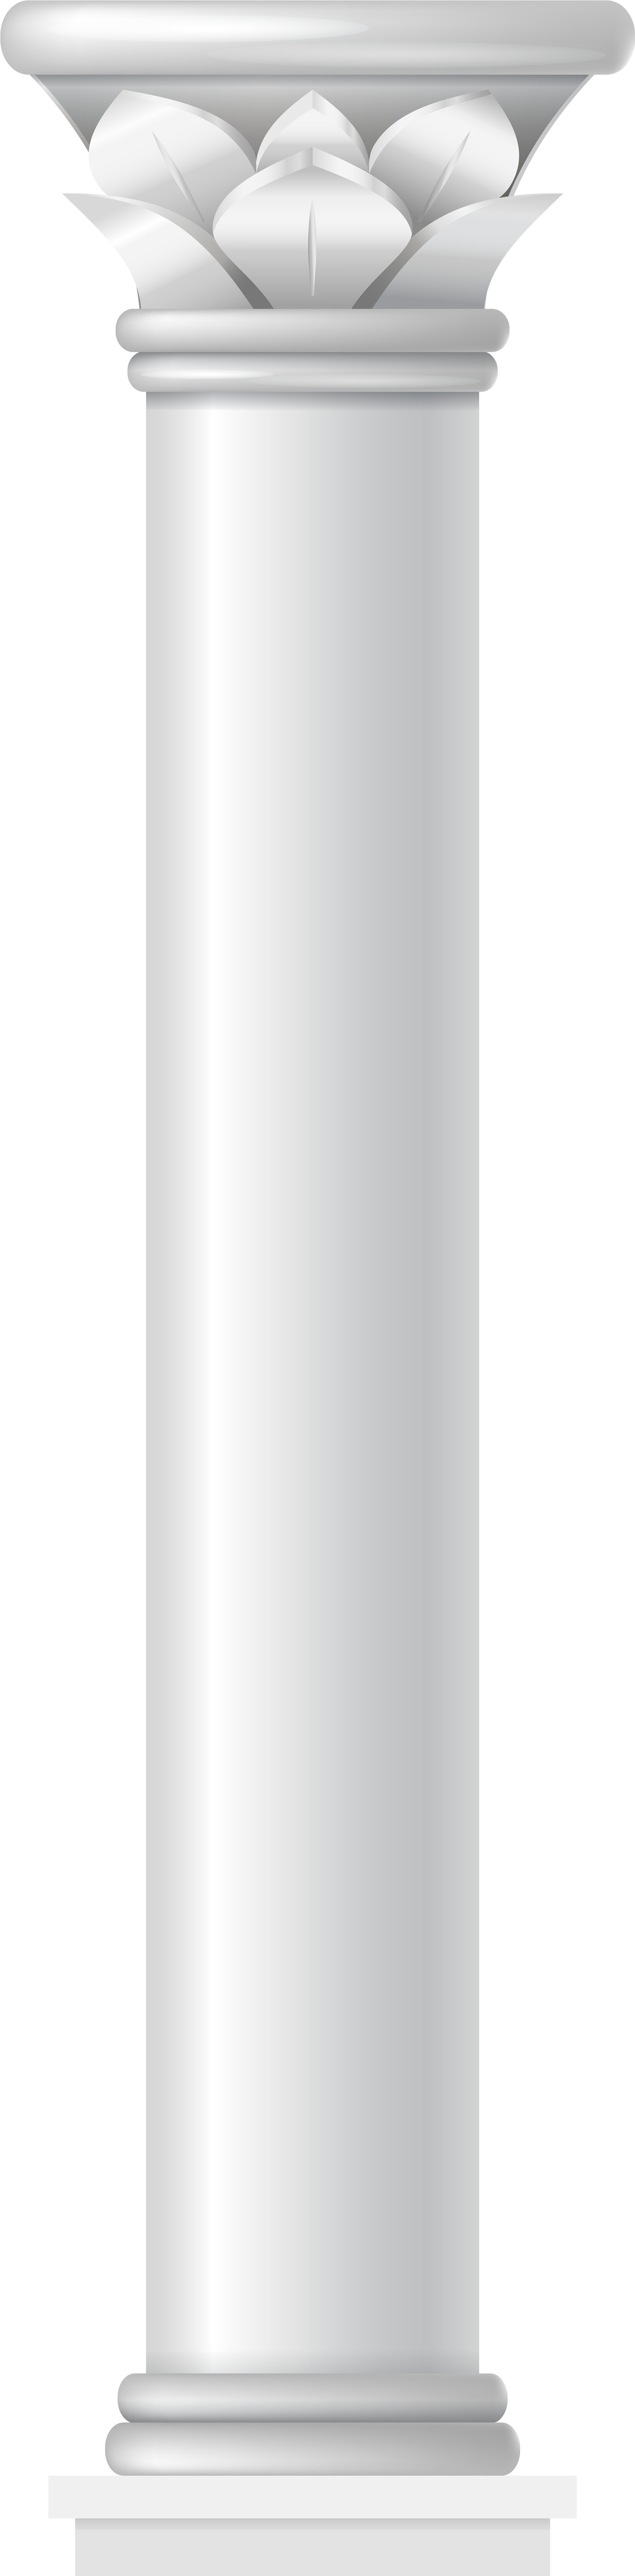 Classical White Corinthian Column